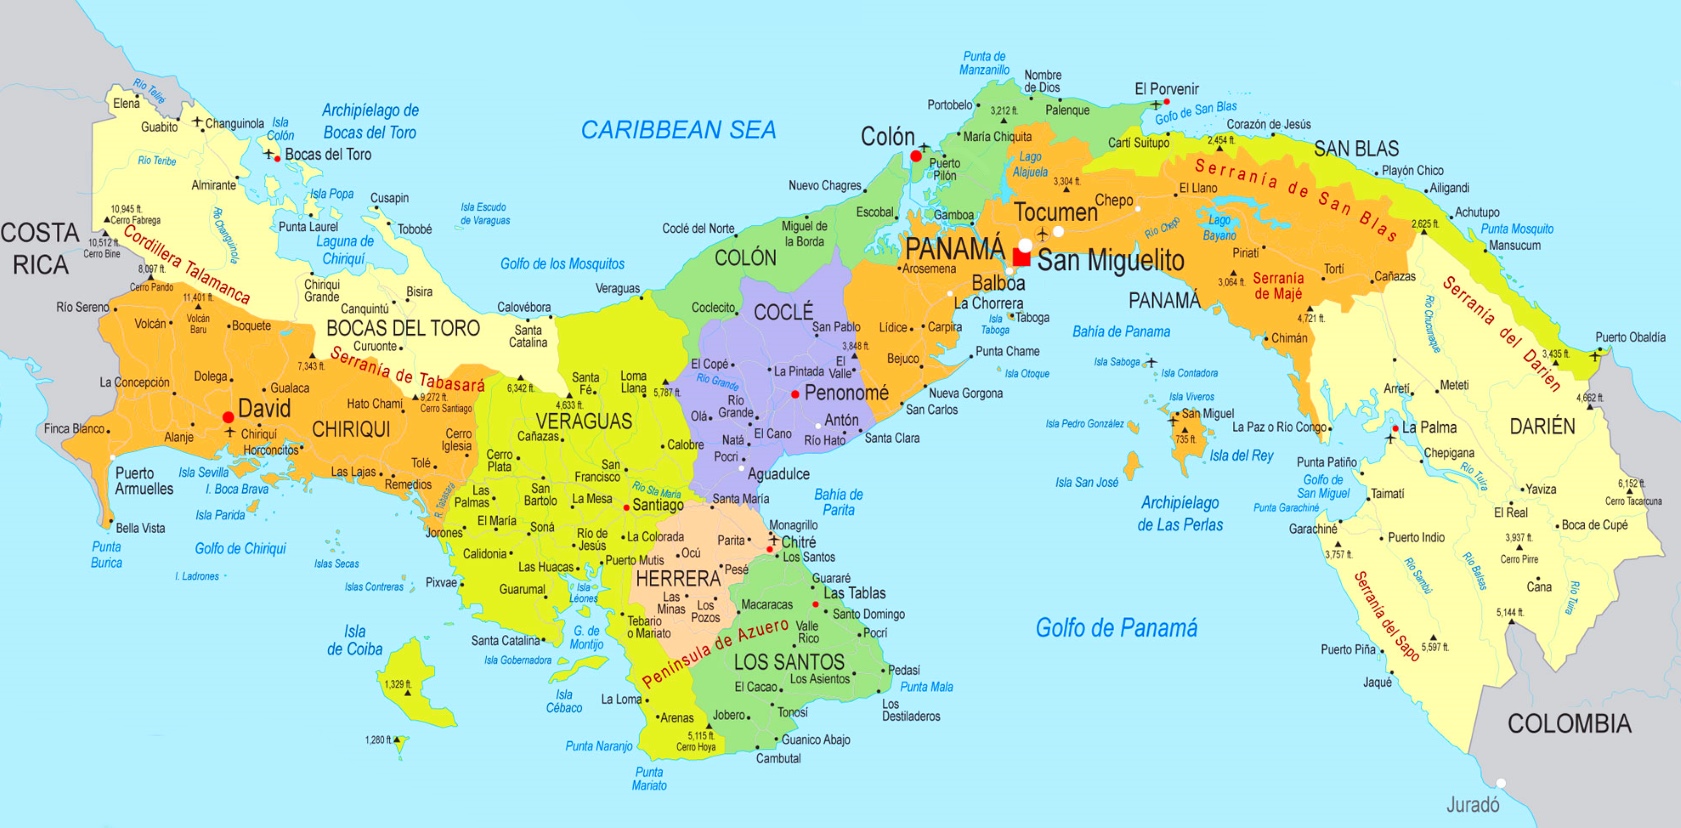 Сан Блас Панама на карте